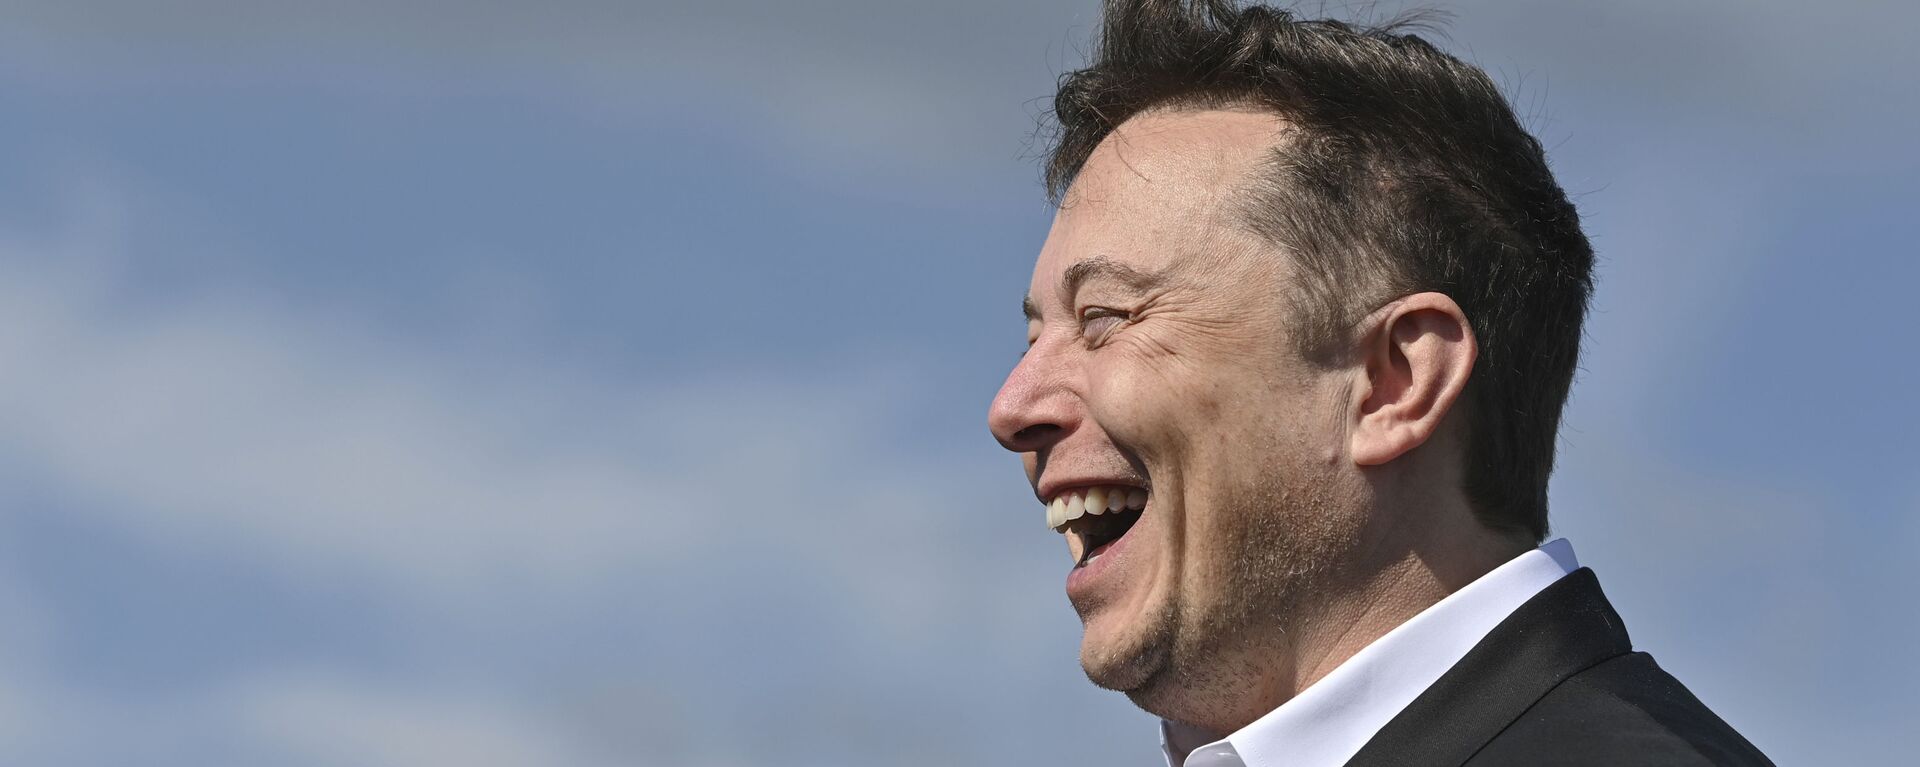 Doanh nhân công nghệ Elon Musk cười khi đến thăm công trường xây dựng Tesla Gigafactory ở Gruenheide gần Berlin, Đức, ngày 3 tháng 9 năm 2020. - Sputnik Việt Nam, 1920, 03.03.2021